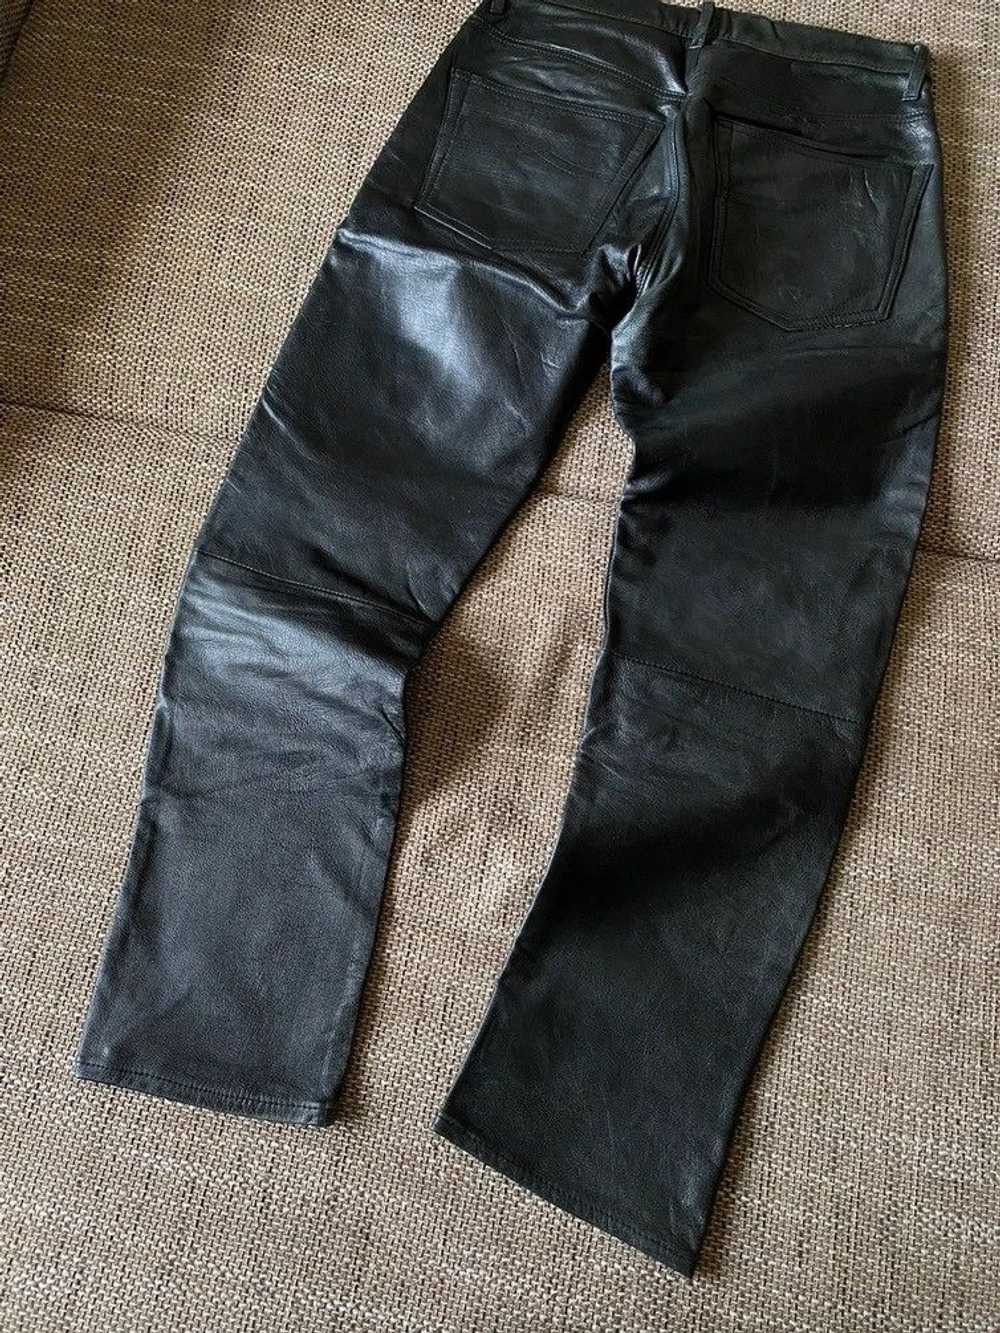 Genuine Leather × Leather × Vintage Vintage leath… - image 9